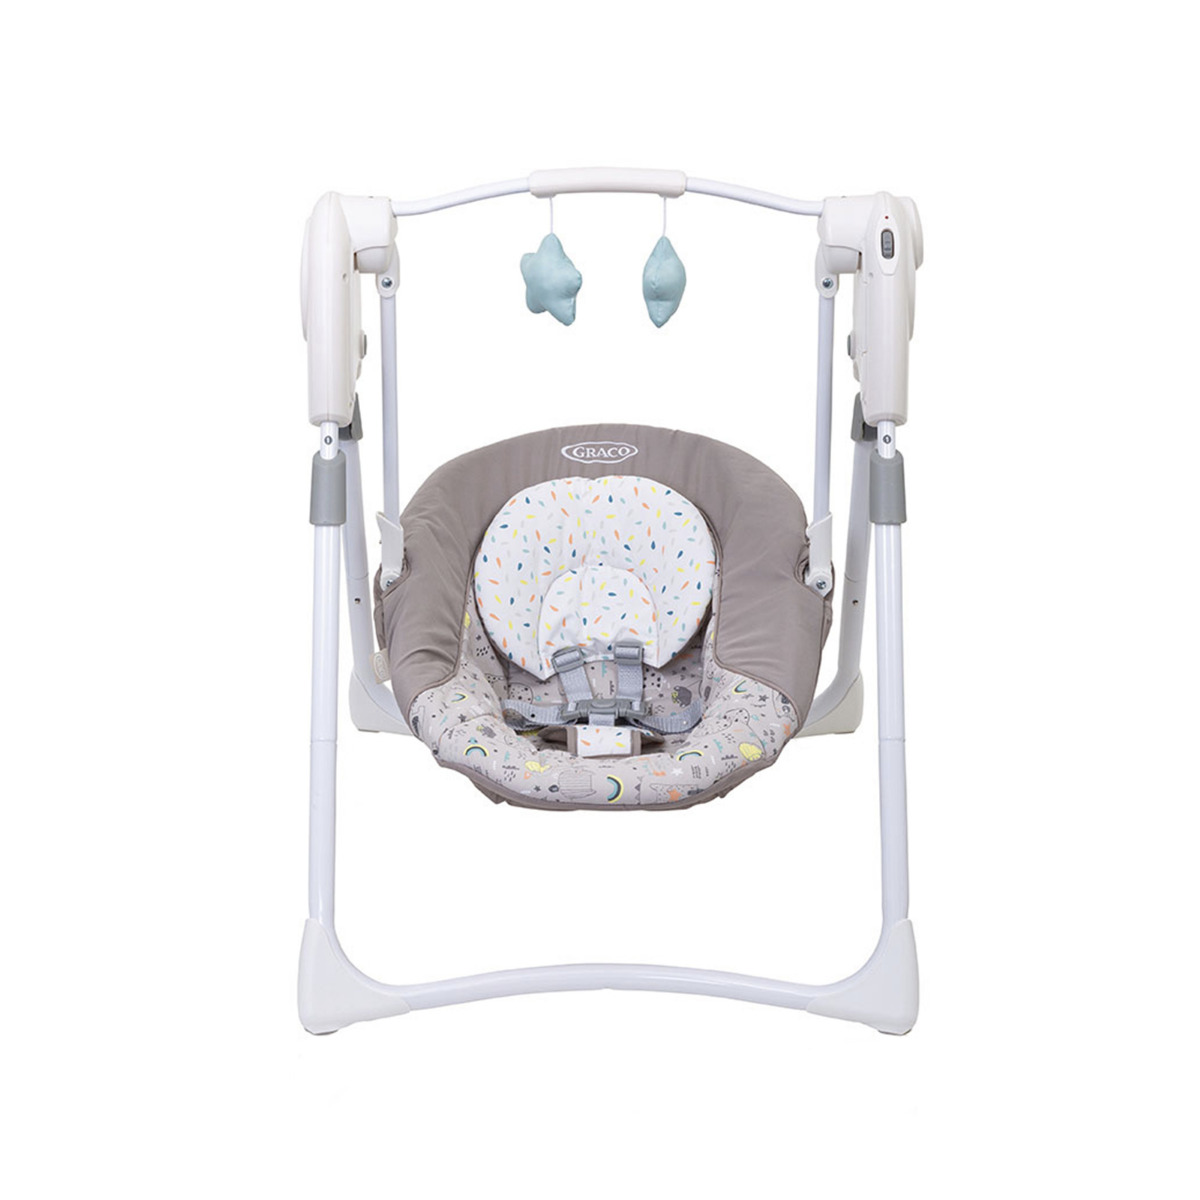 Frontansicht der elektrischen Babyschaukel Graco Slim Spaces